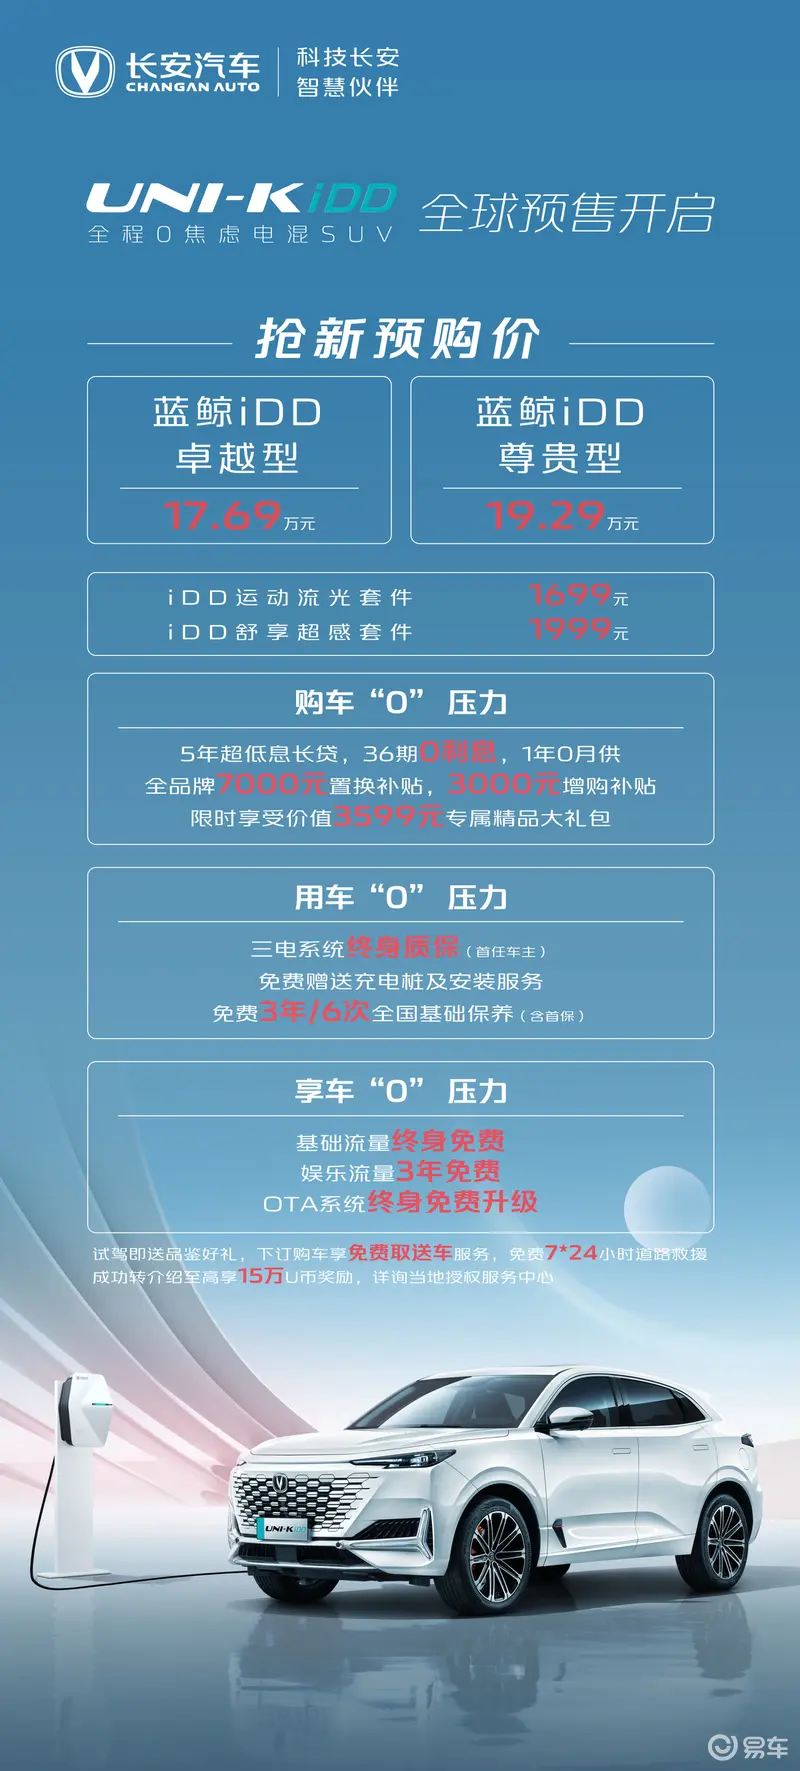 长安入局插电混动，UNI-K iDD预售开启，17.69万-19.29万元